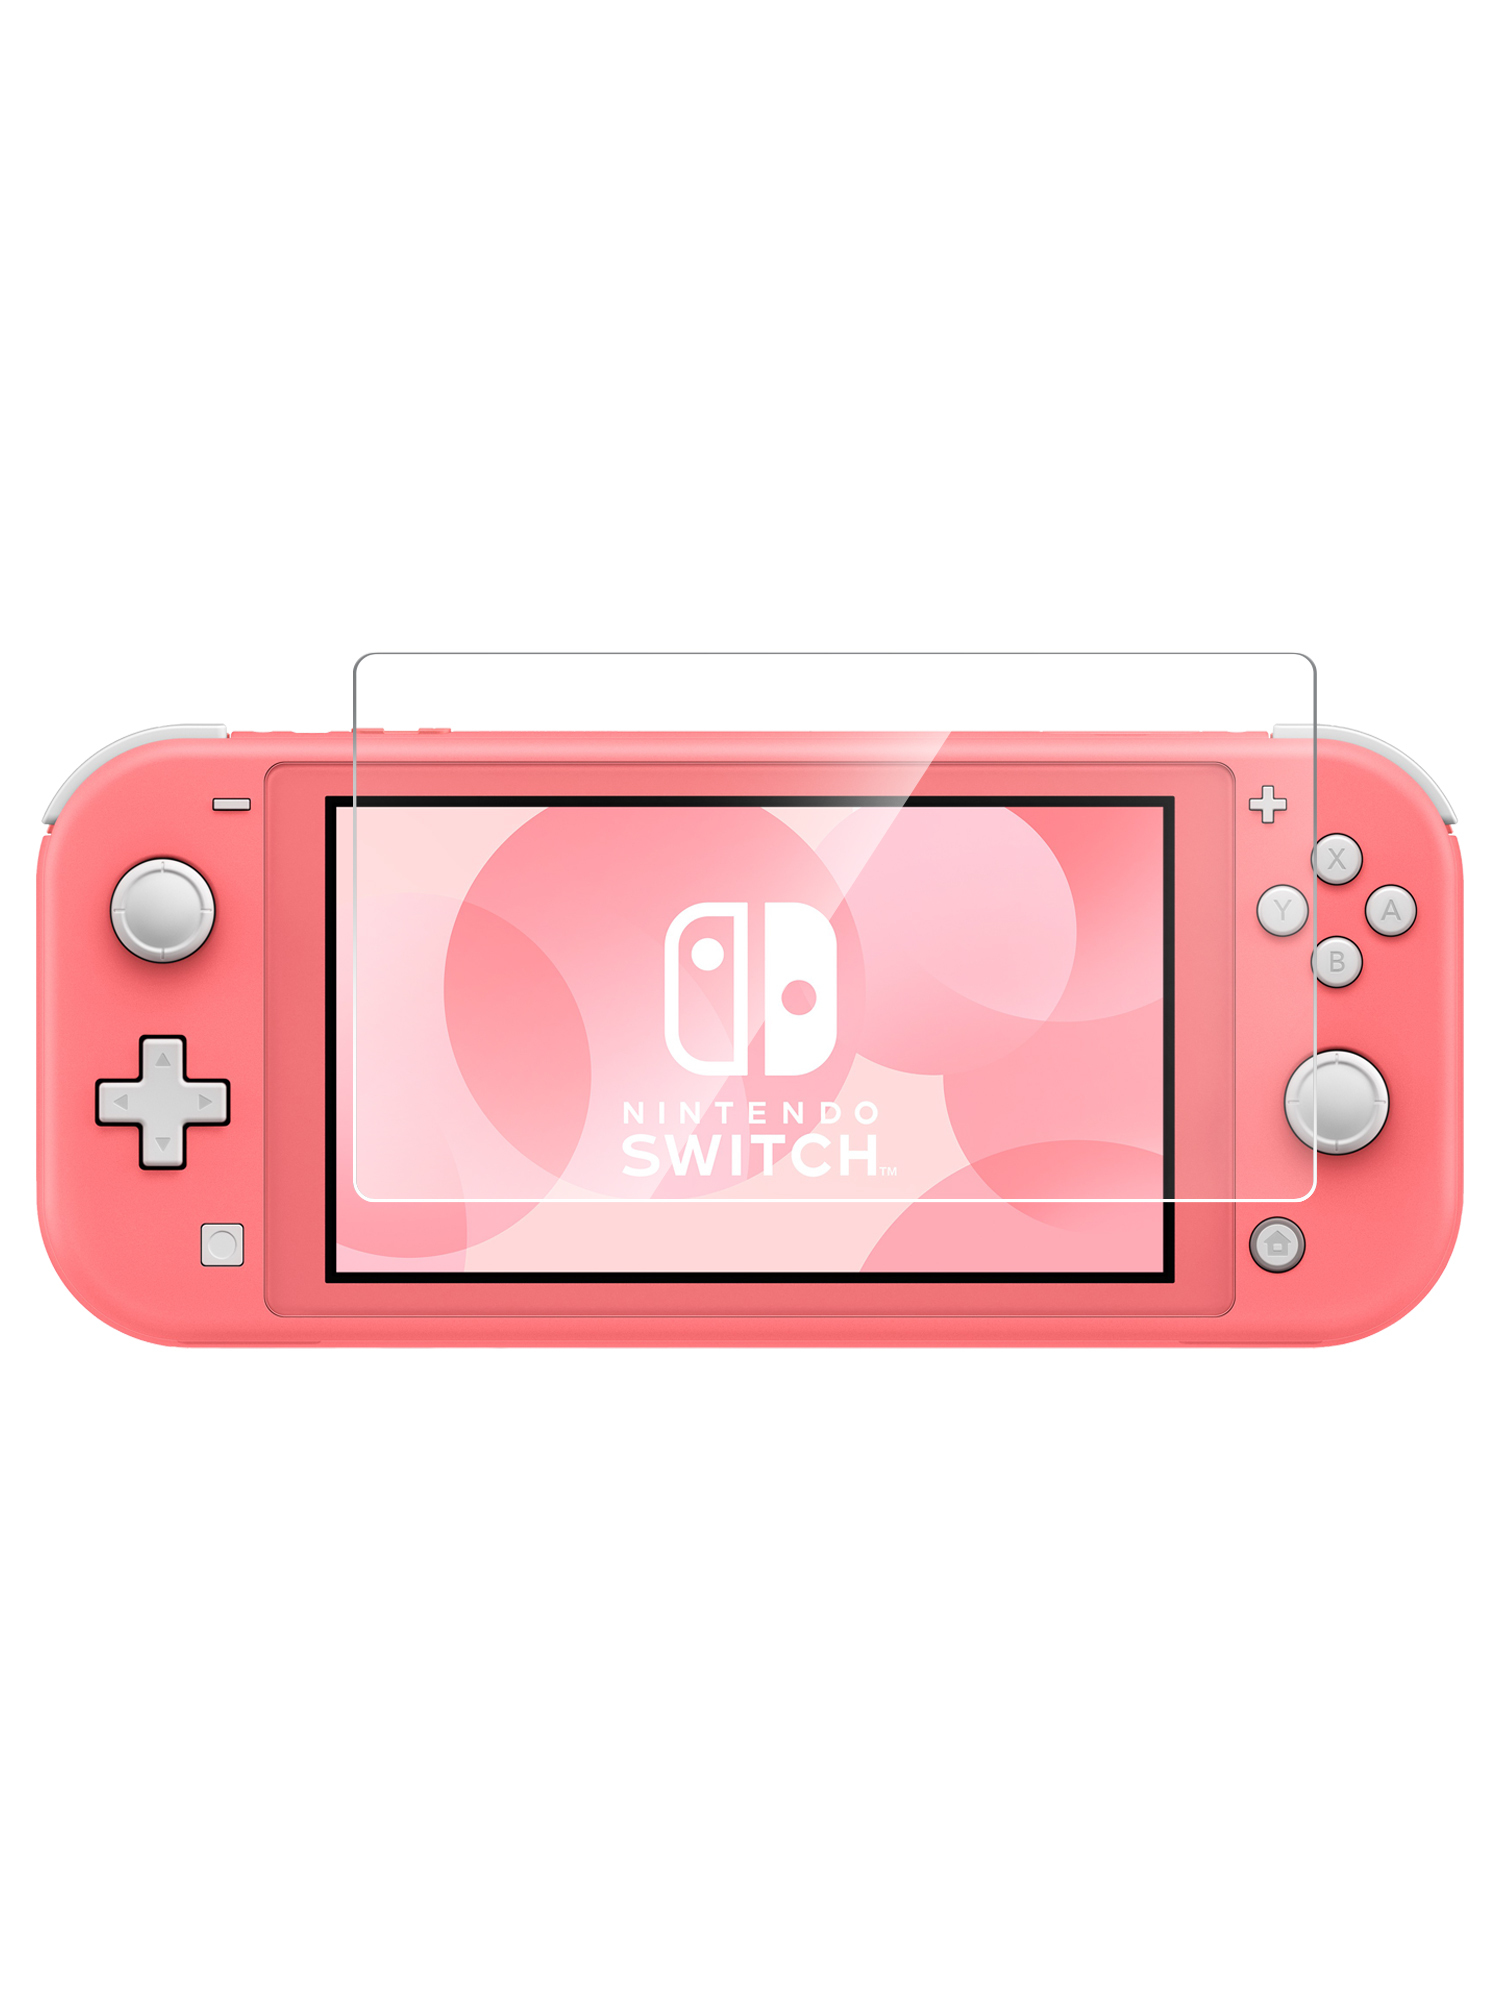 Nintendo спб. Игровая консоль Nintendo Switch Lite. Портативная игровая консоль Nintendo Switch Lite. Нинтендо свитч Лайт розовый. Нинтендо свитч Лайт коралловый.